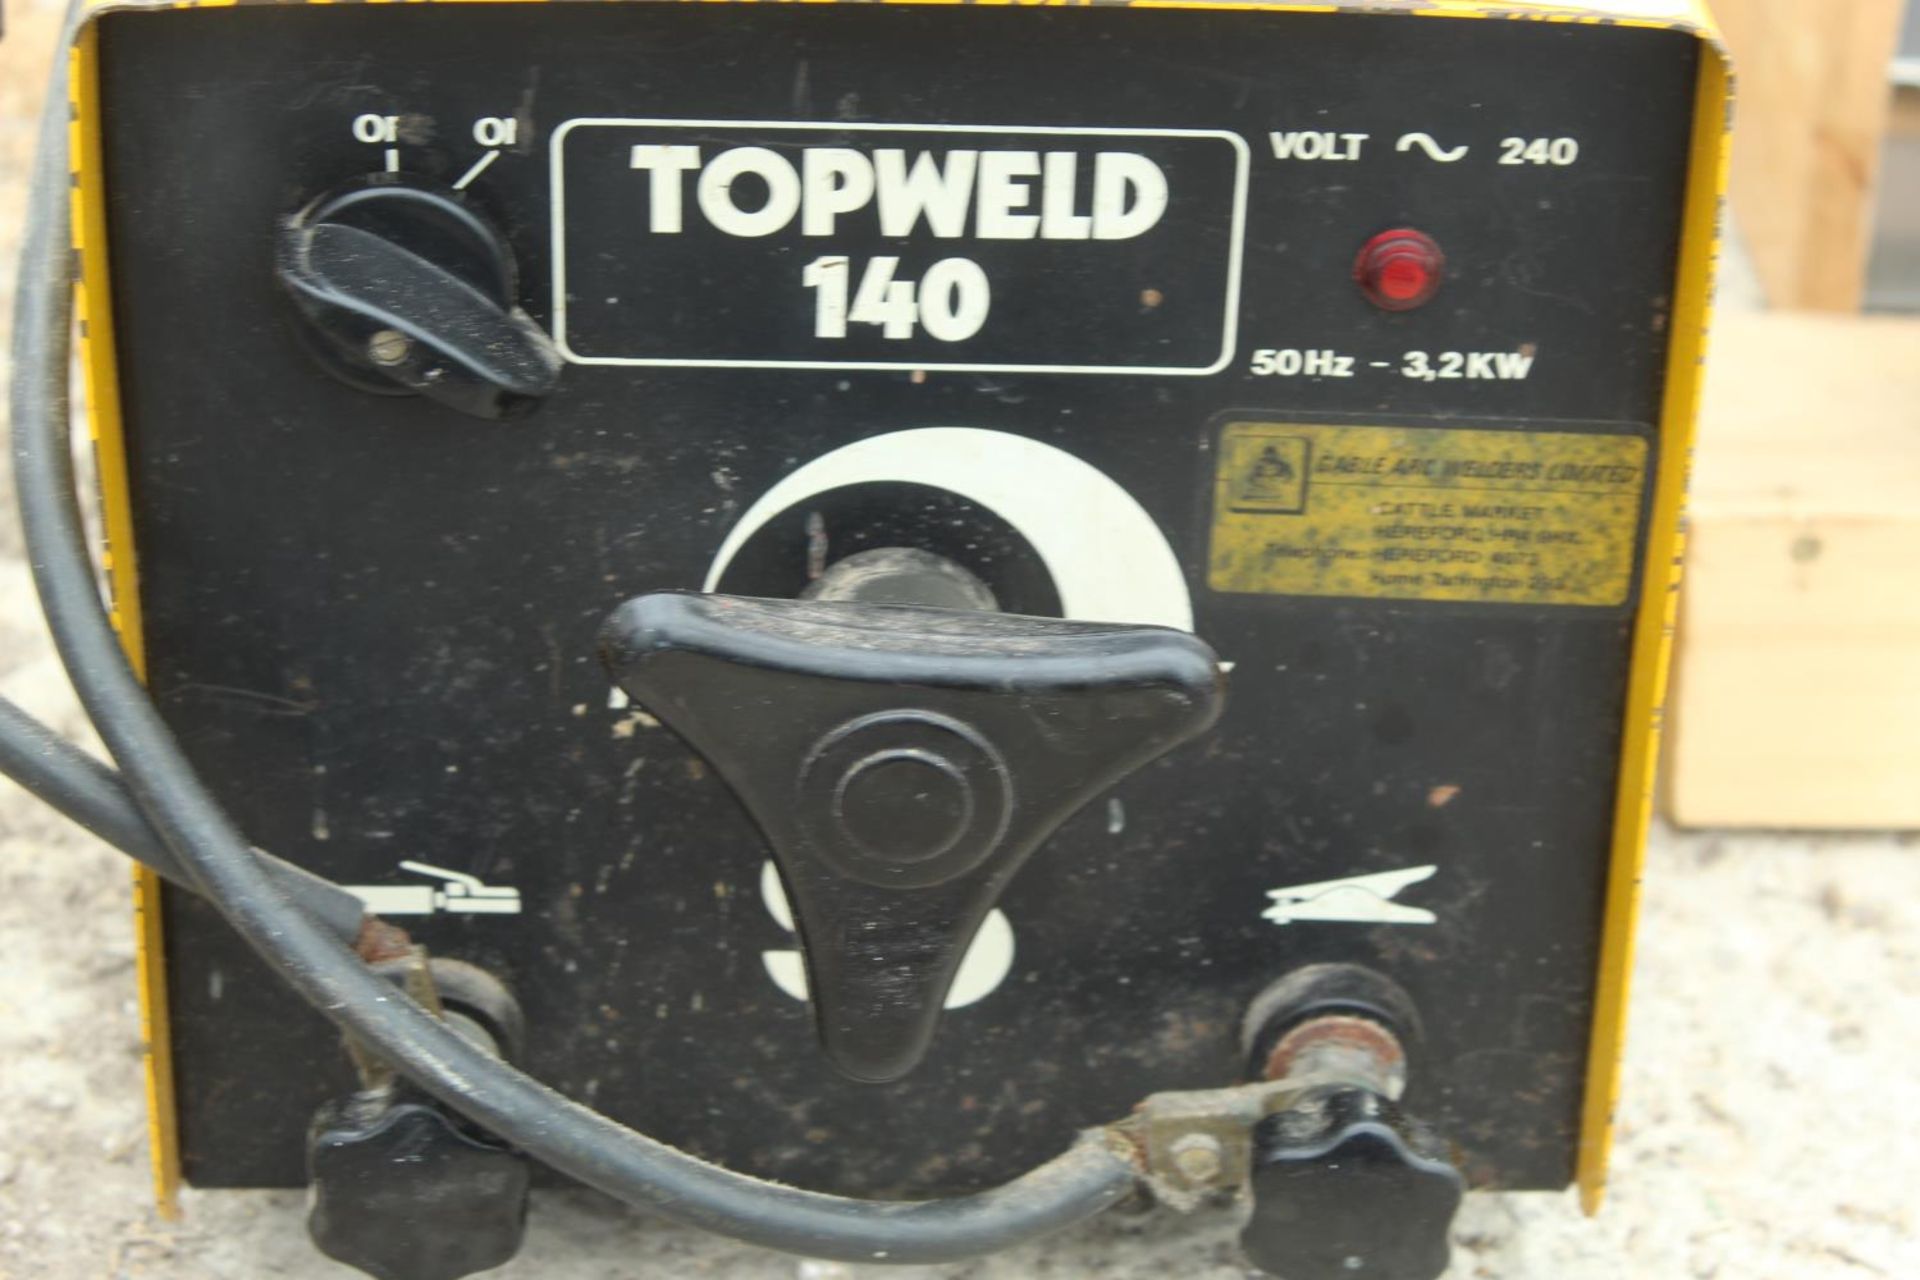 TOPWELD LTD 140 WELDER NO VAT - Image 2 of 2